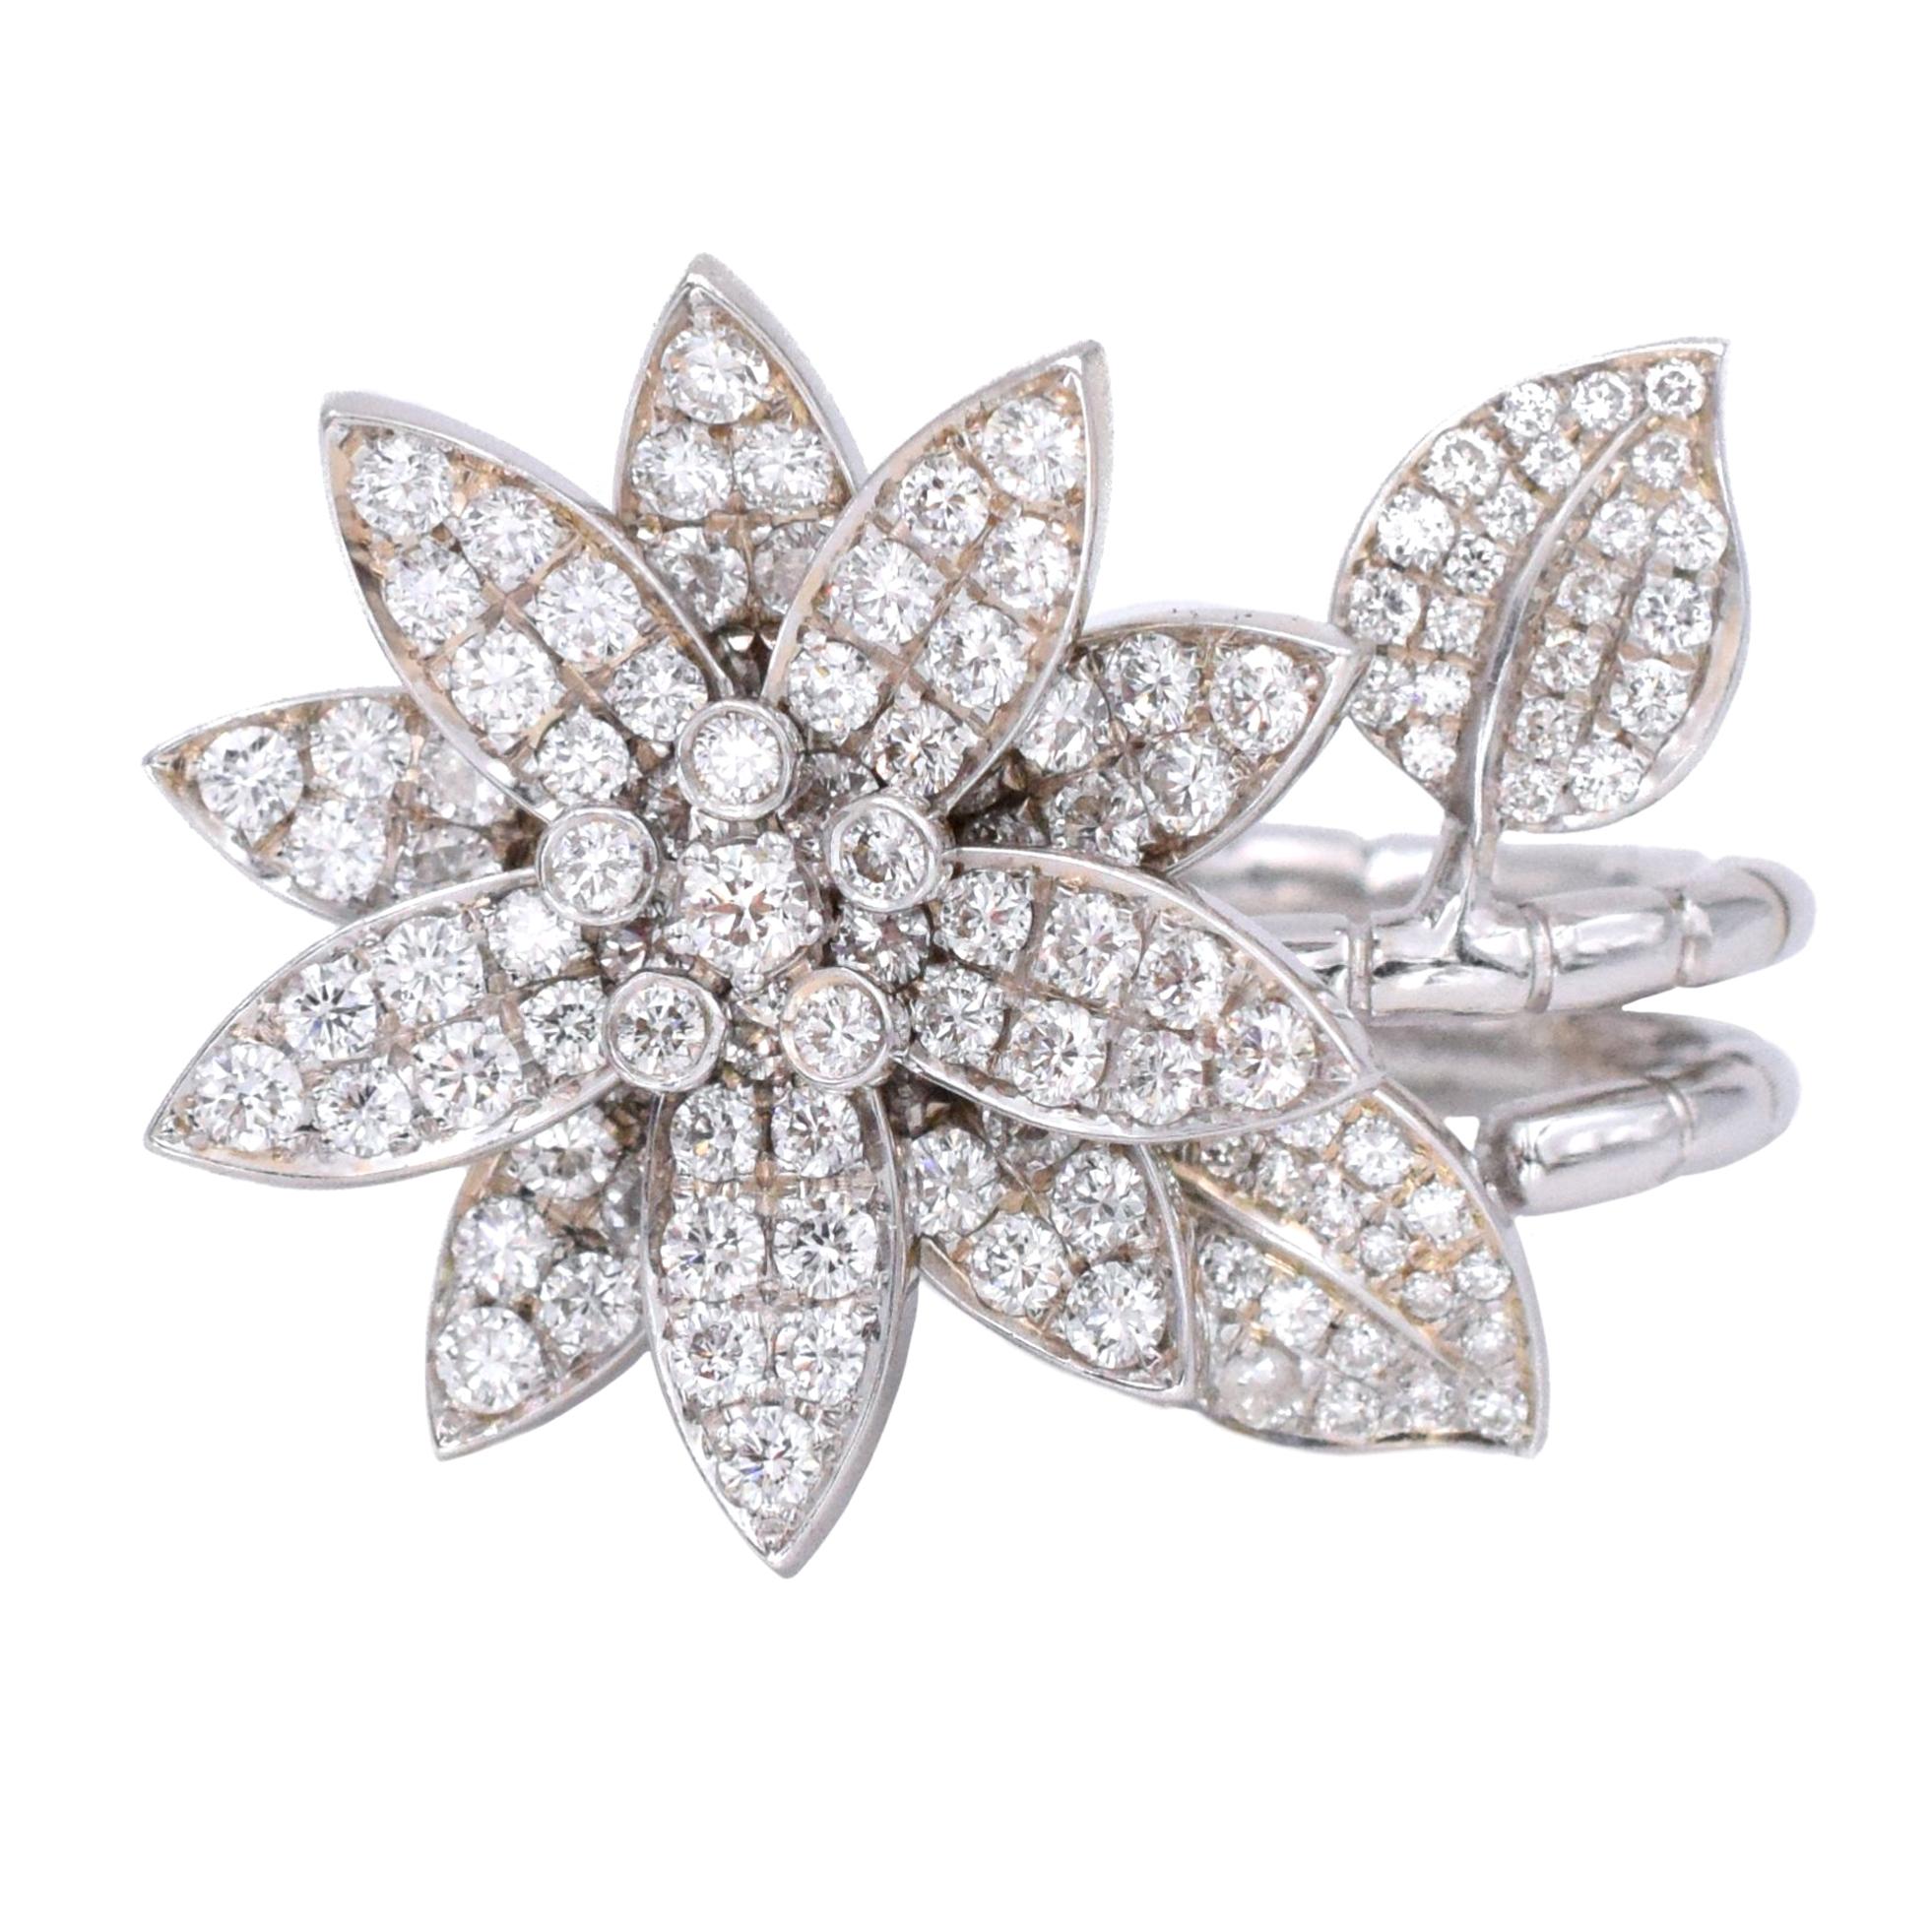 Van Cleef & Arpels "Lotus" Diamond Ring